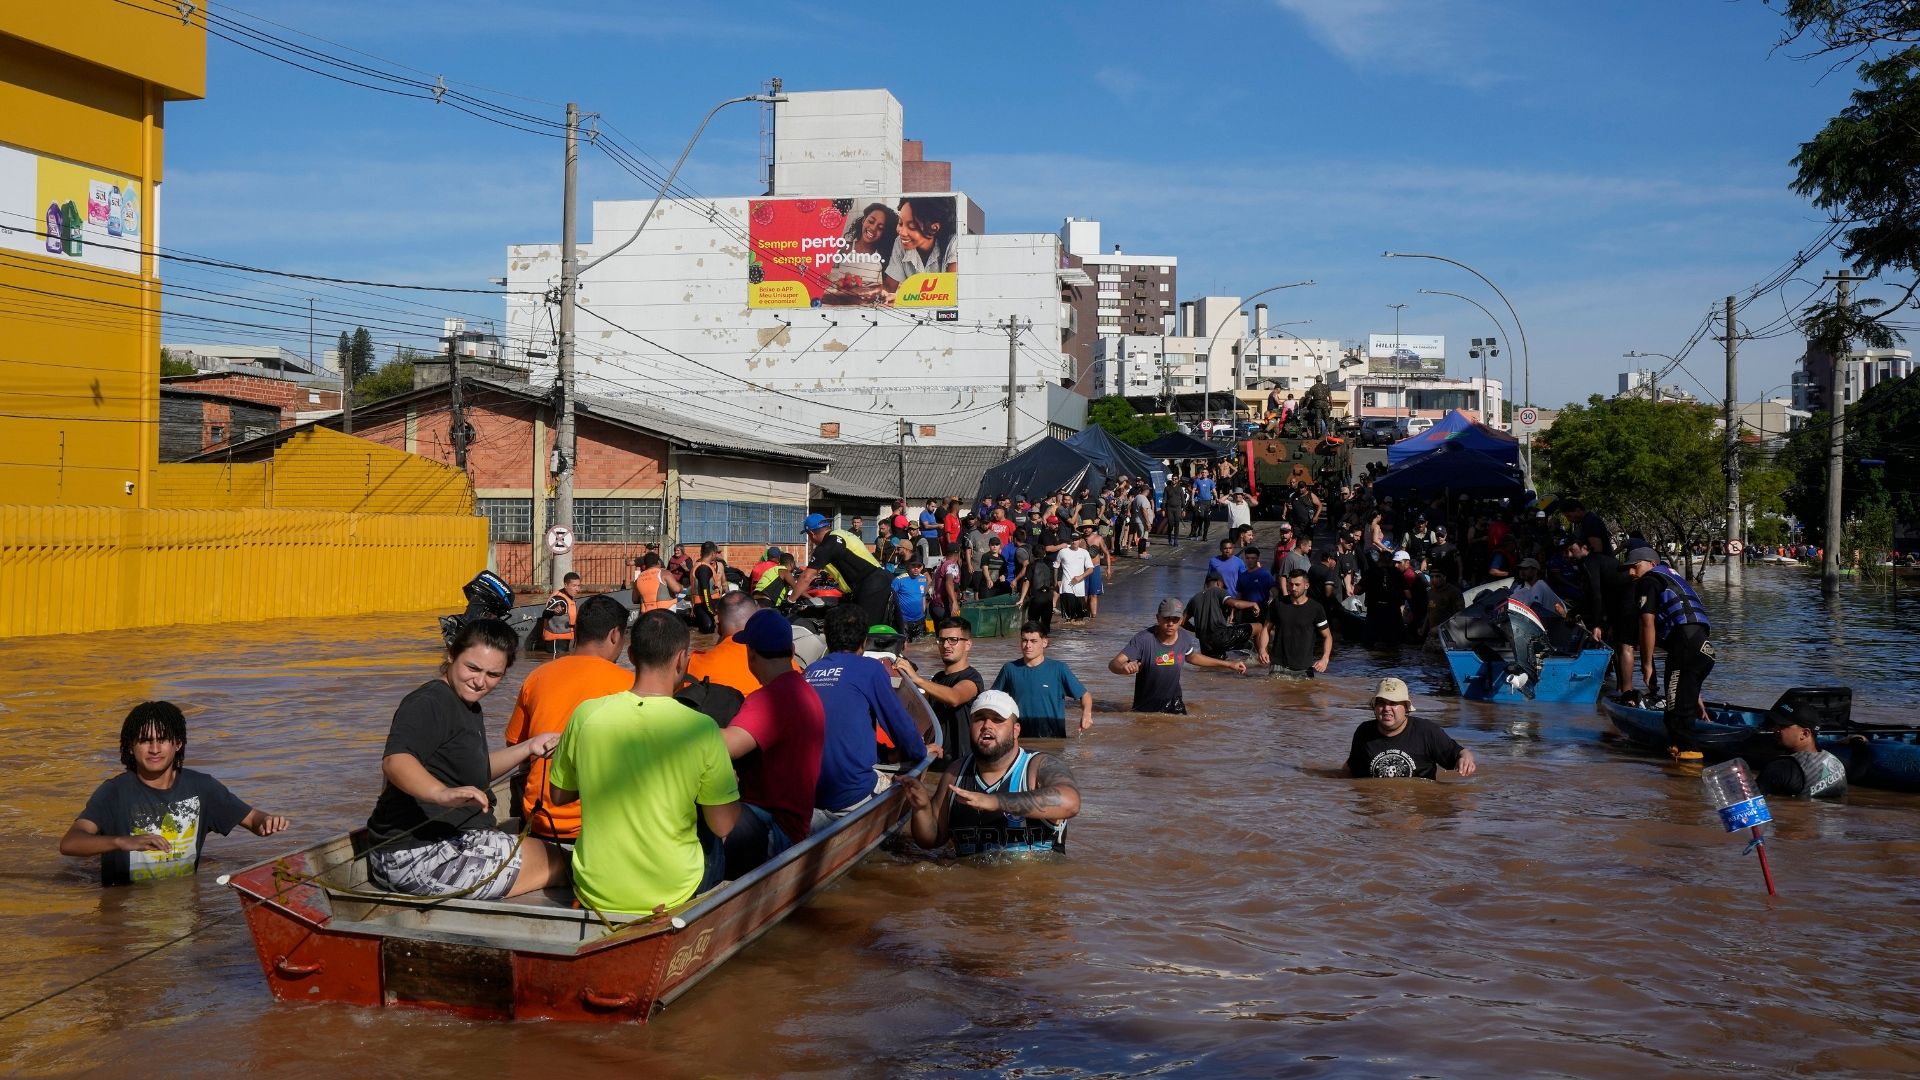 Unas catastróficas inundaciones dejan al menos 100 muertos y miles de personas sin hogar en Brasil  1920x1080_cmsv2_387d8d8d-a697-557b-8251-52d158487362-8425530